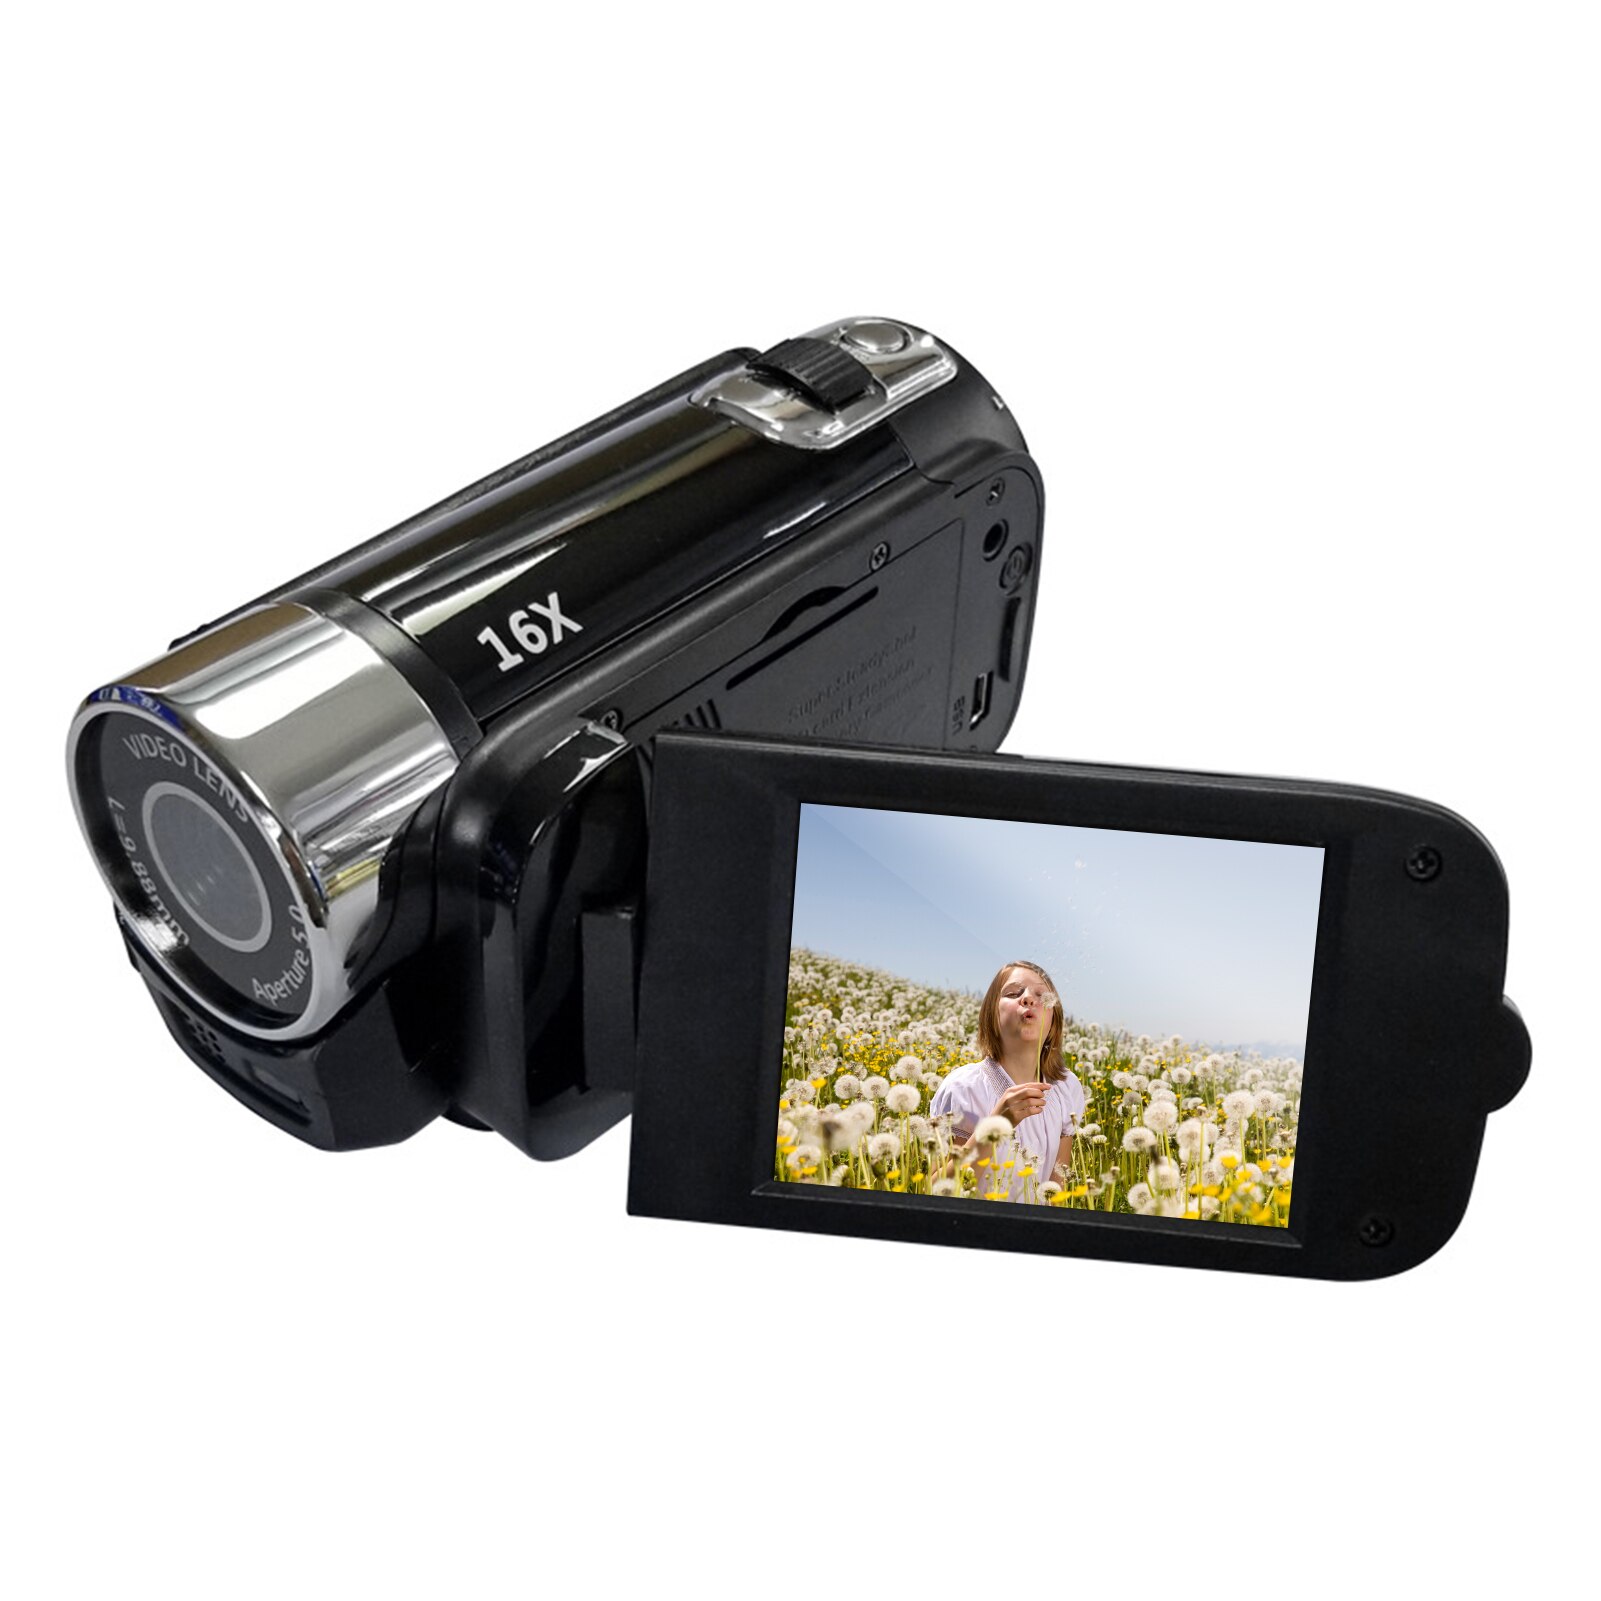 Videocamera digitale ad alta definizione portatile 1080P videocamera DV 16MP schermo LCD da 2.7 pollici Zoom digitale 16X batteria integrata: black